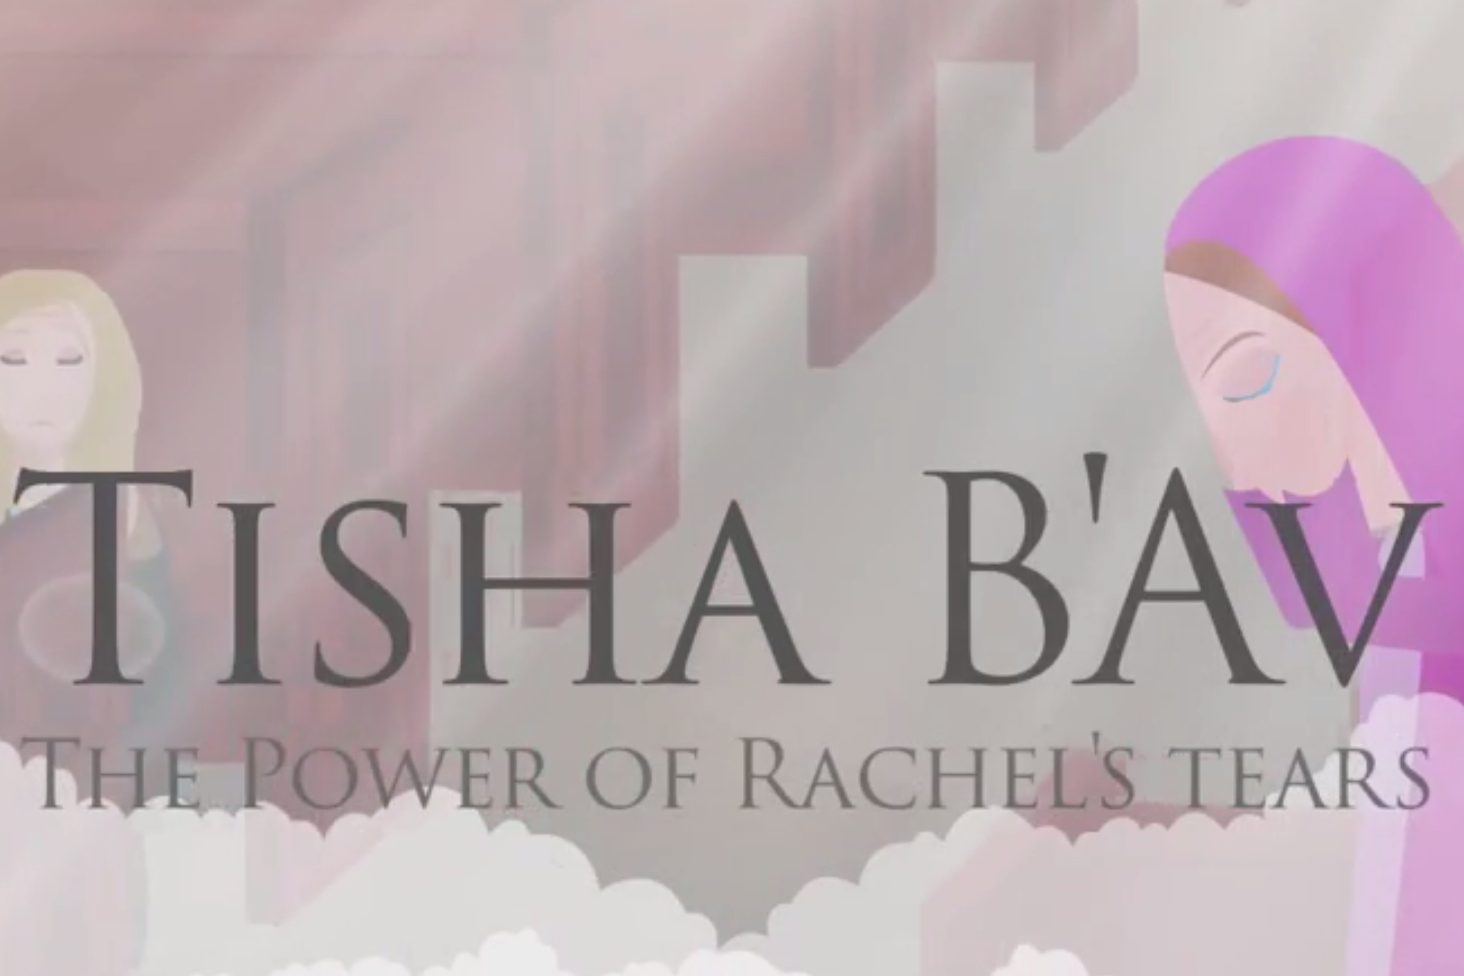 Tisha B’Av: The Power of Rachel’s Tears